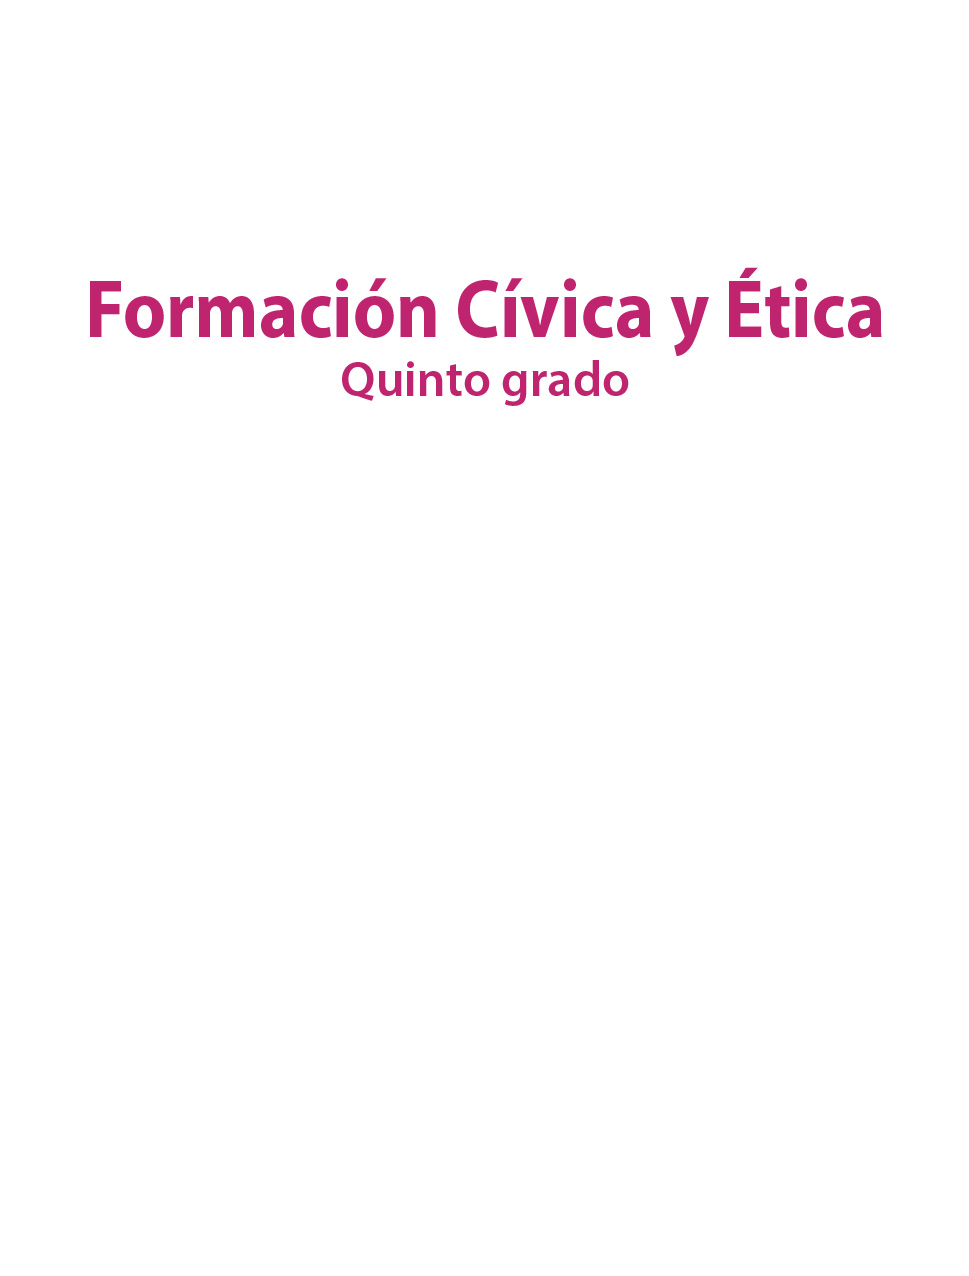 Formacion Civica Y Etica Libro De Primaria Grado 5 Comision Nacional De Libros De Texto Gratuitos